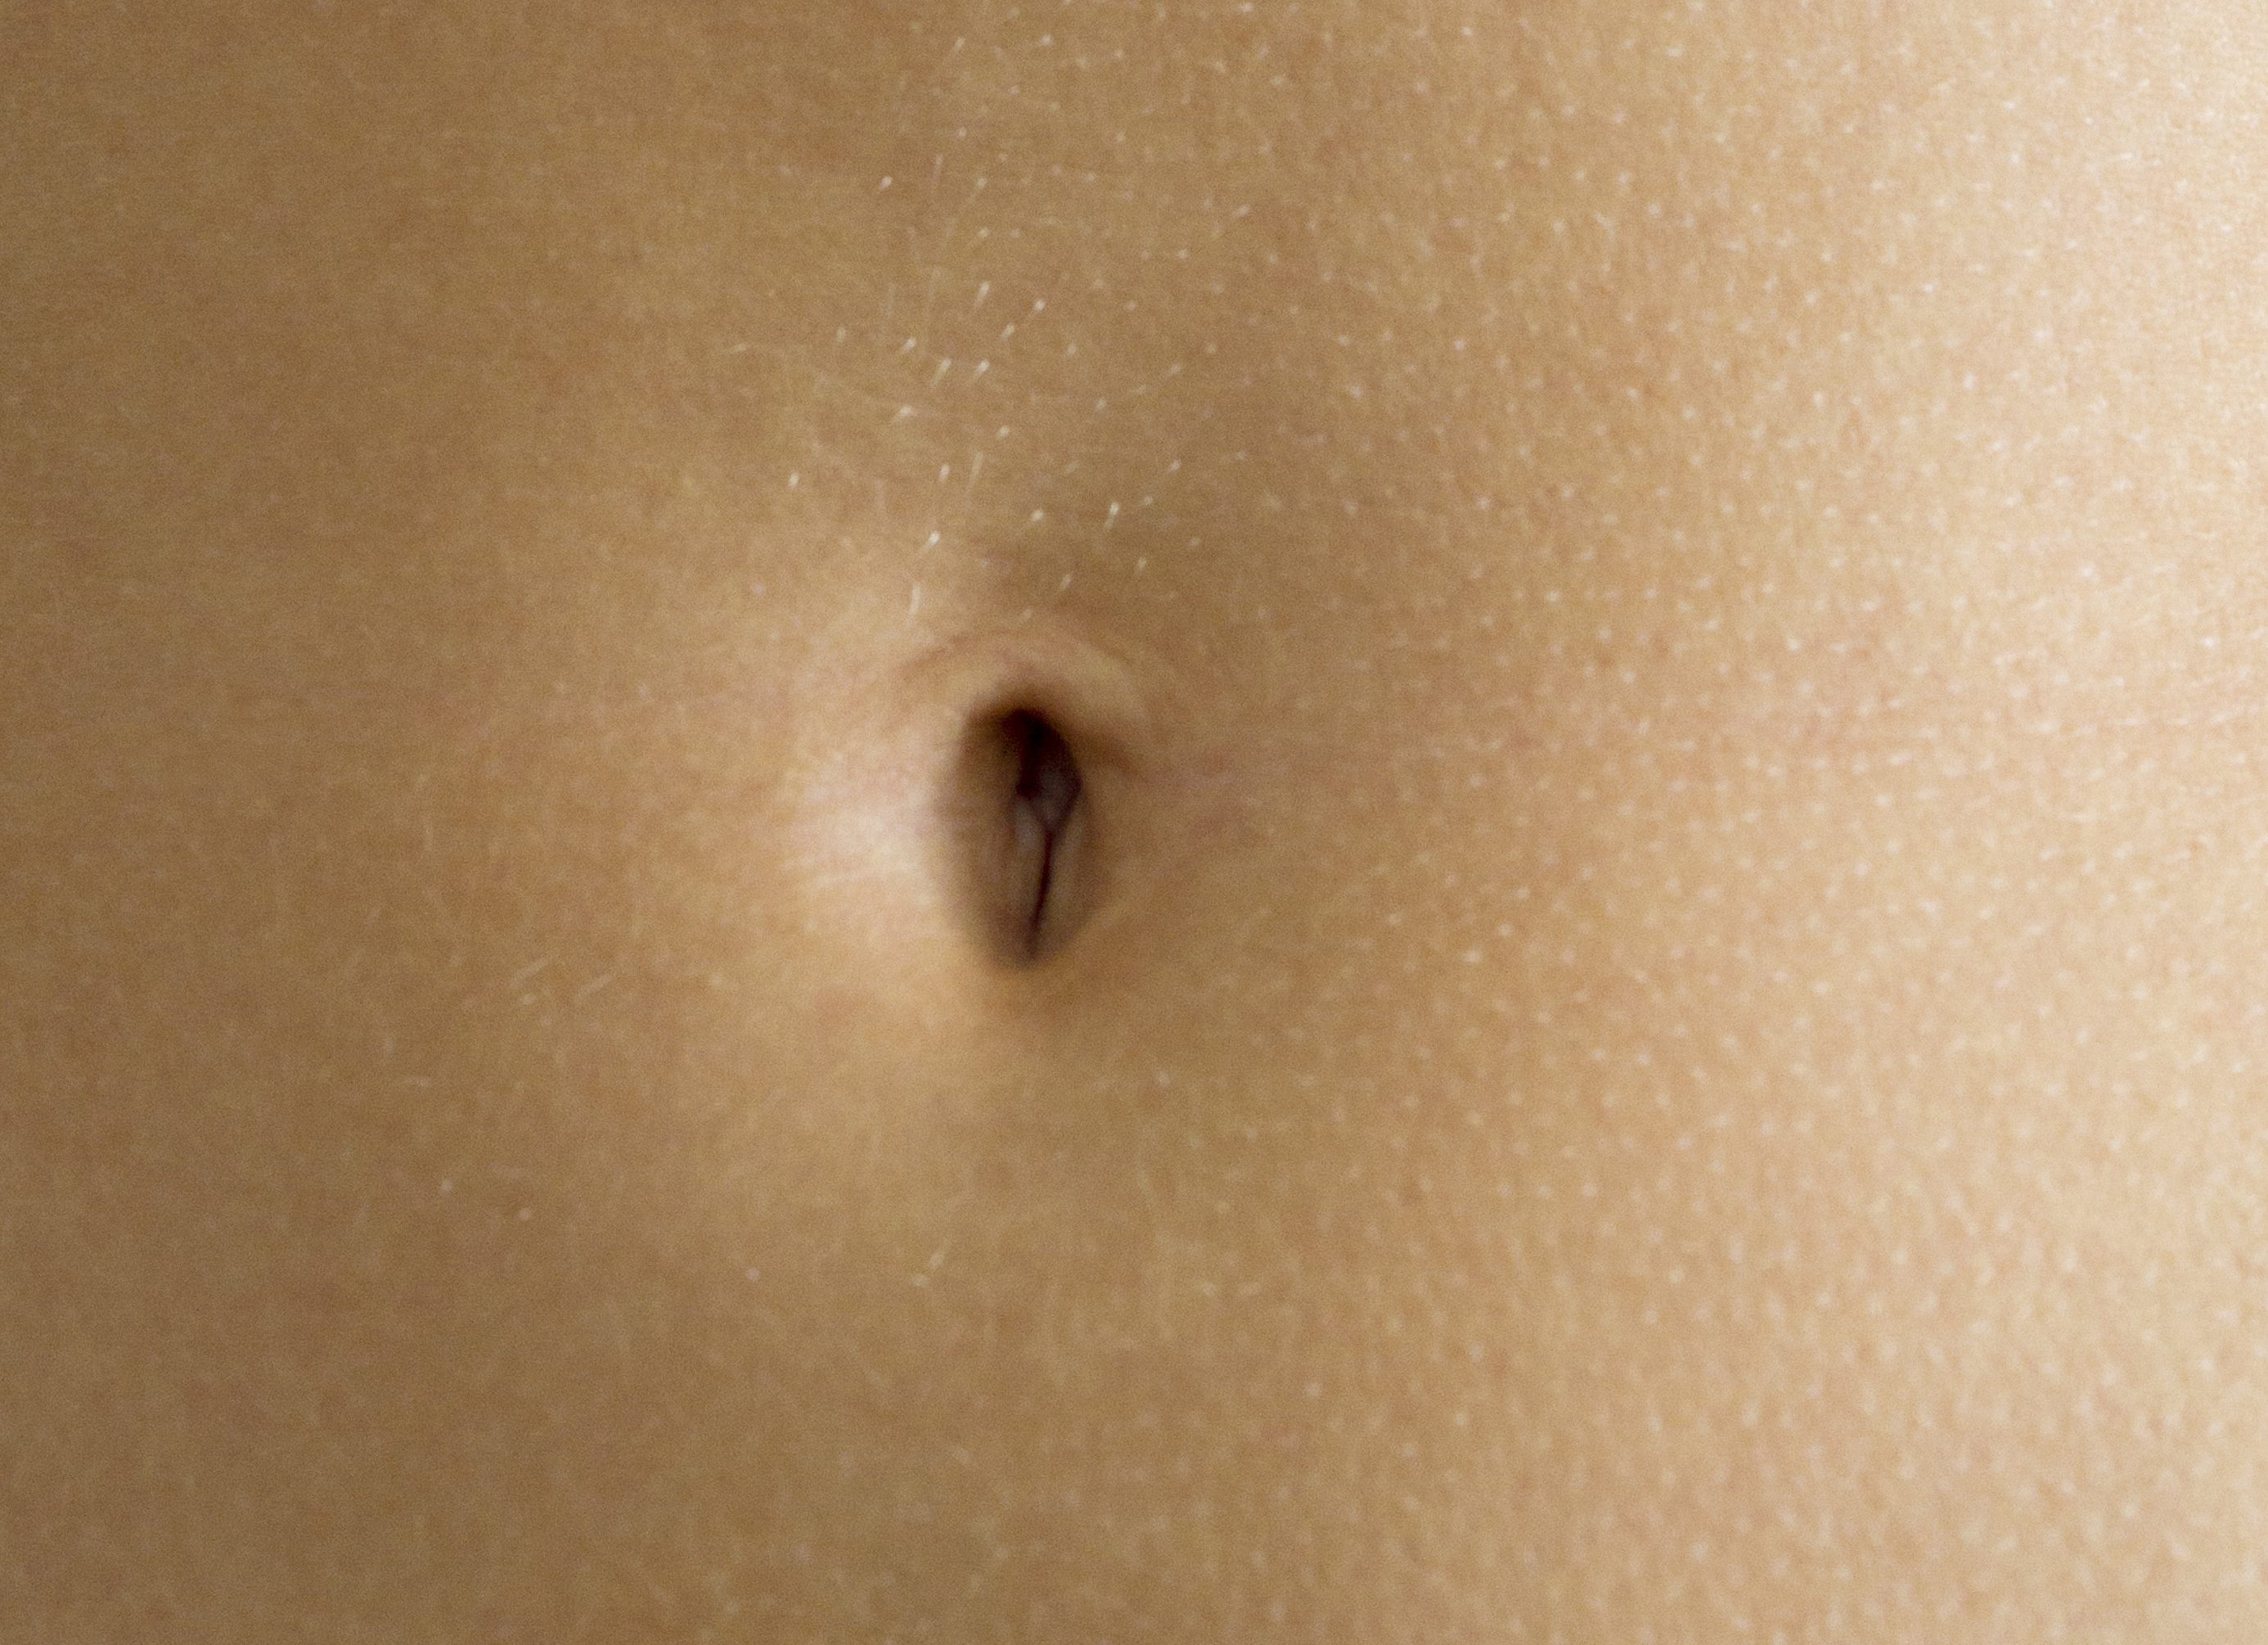 clinton mccalla share male belly button fetish photos